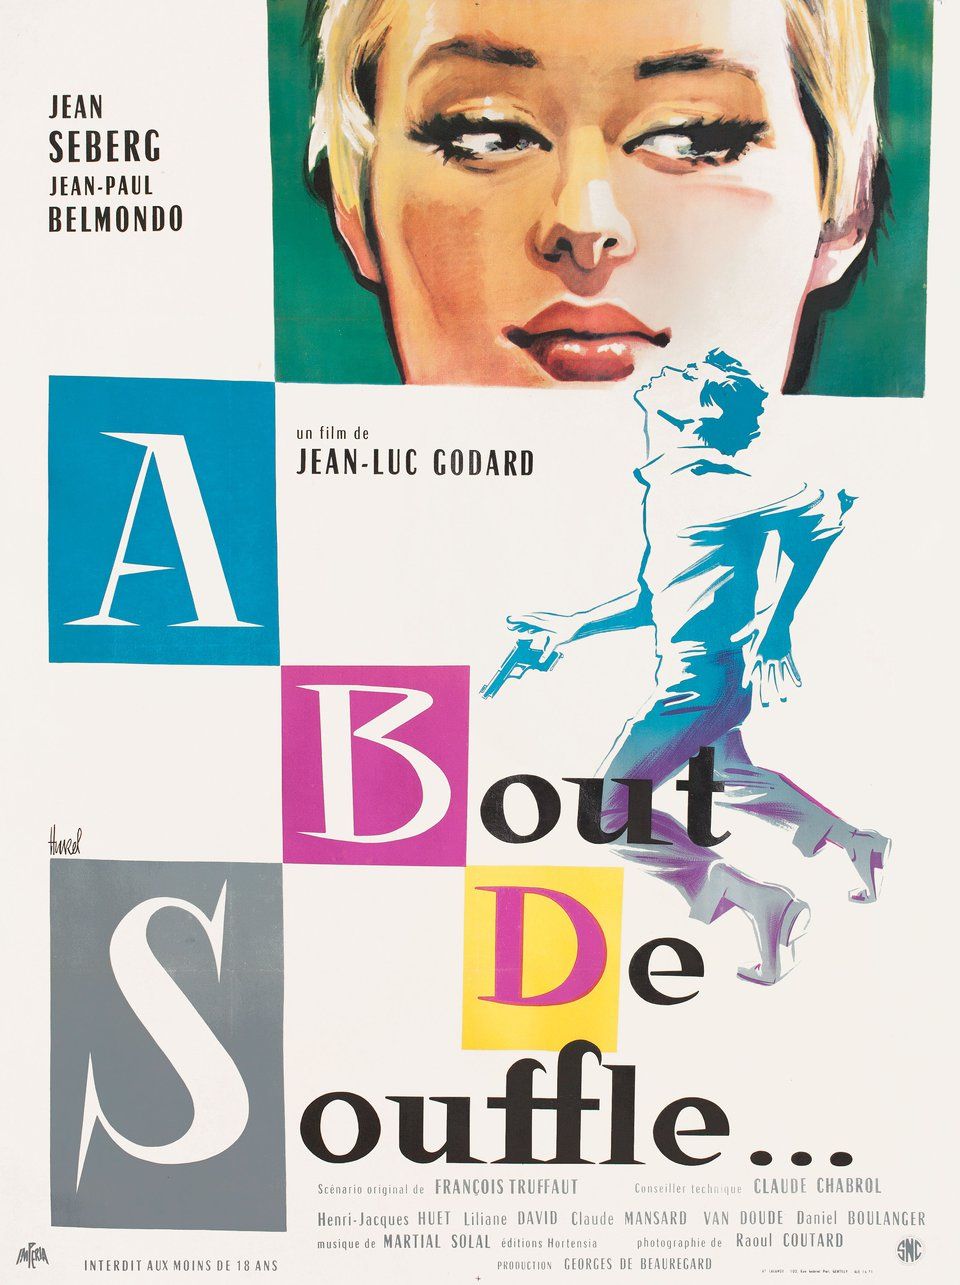 Poster À Bout De Souffle